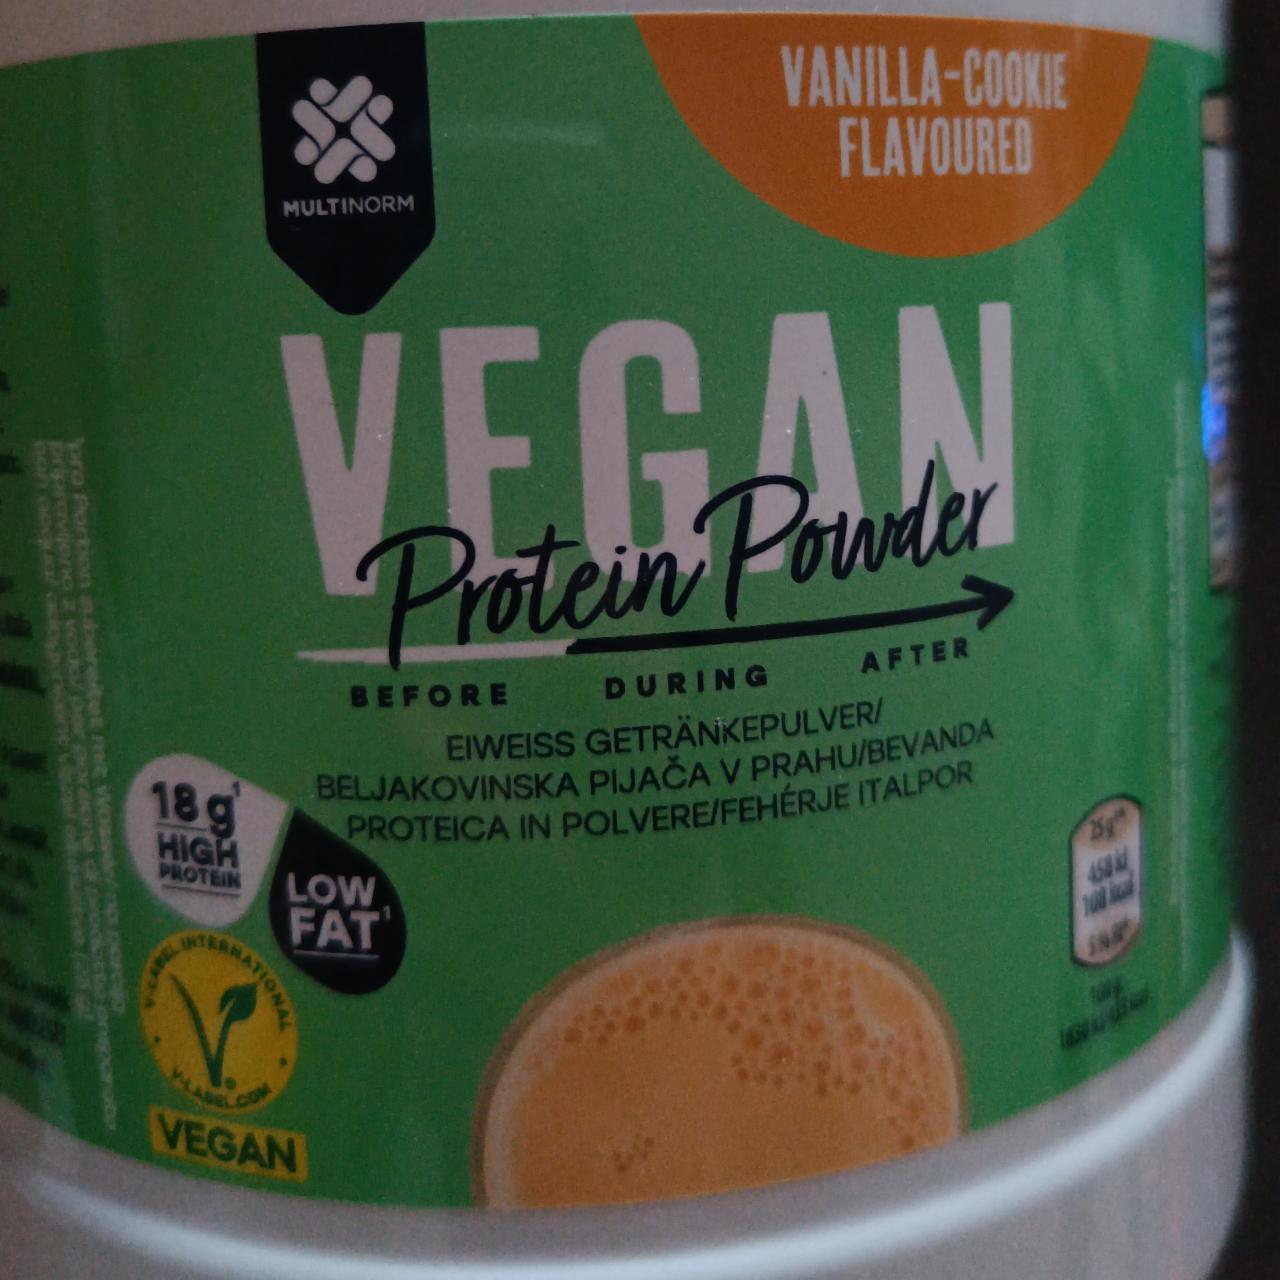 Fotografie - Vegan Protein Powder Vanilla-Cookie flavoured Multinorm